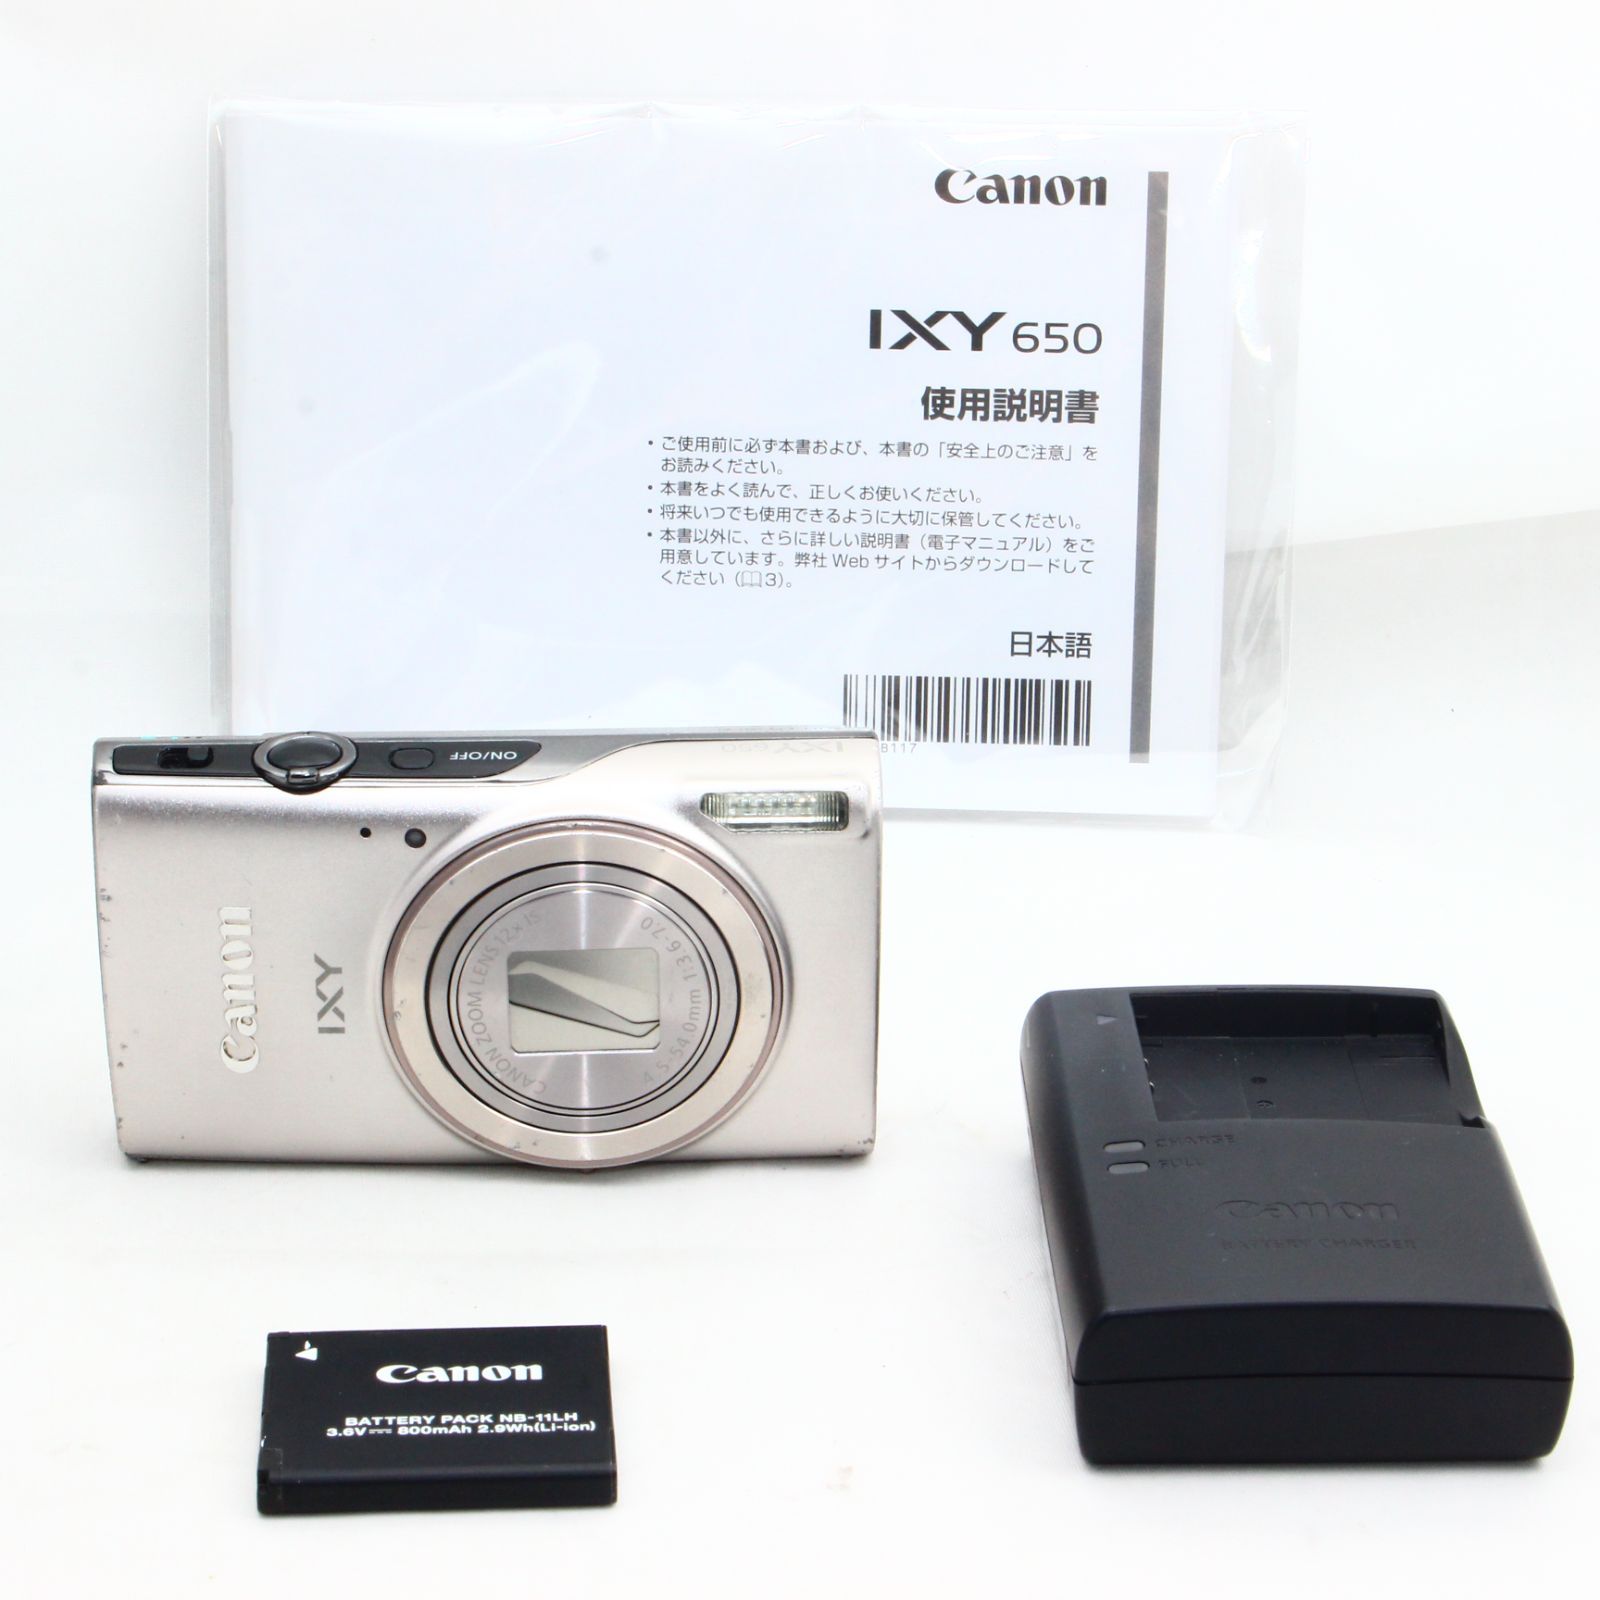 数量限定・即納特価!! Canon コンパクトデジタルカメラ IXY 650